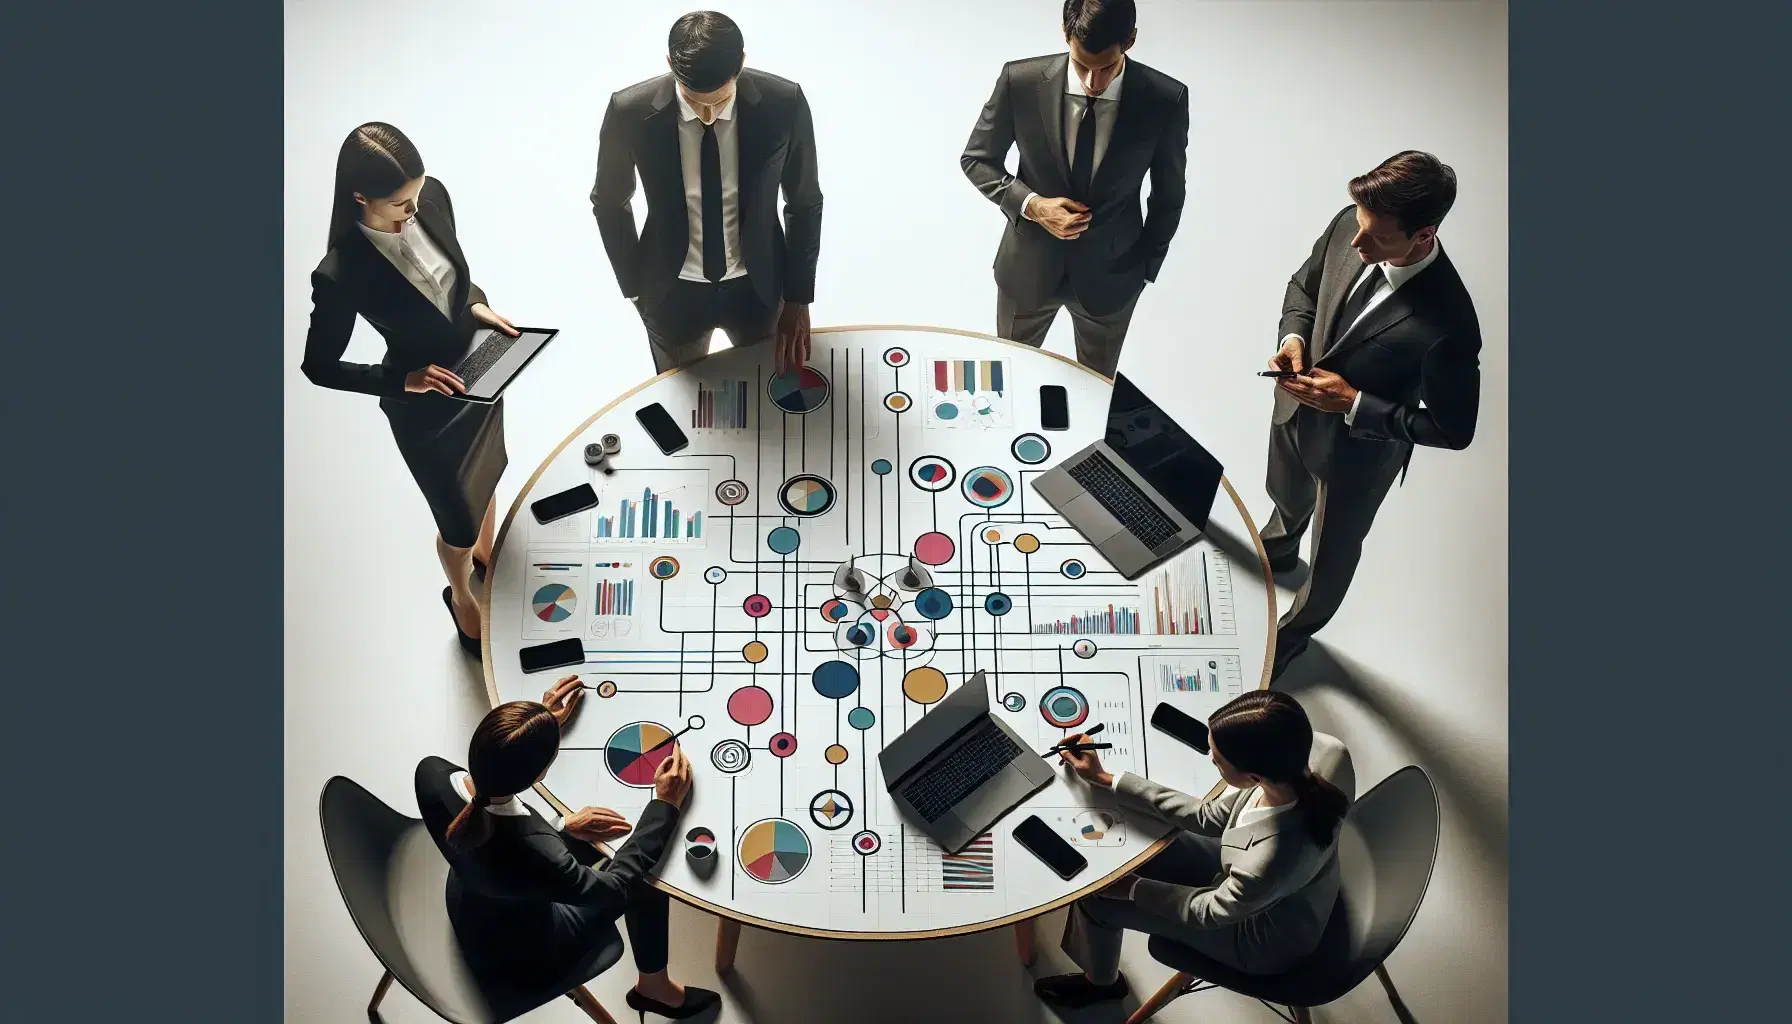 Grupo de cinco profesionales colaborando en una oficina con dispositivos electrónicos y un diagrama de flujo colorido sobre la mesa.